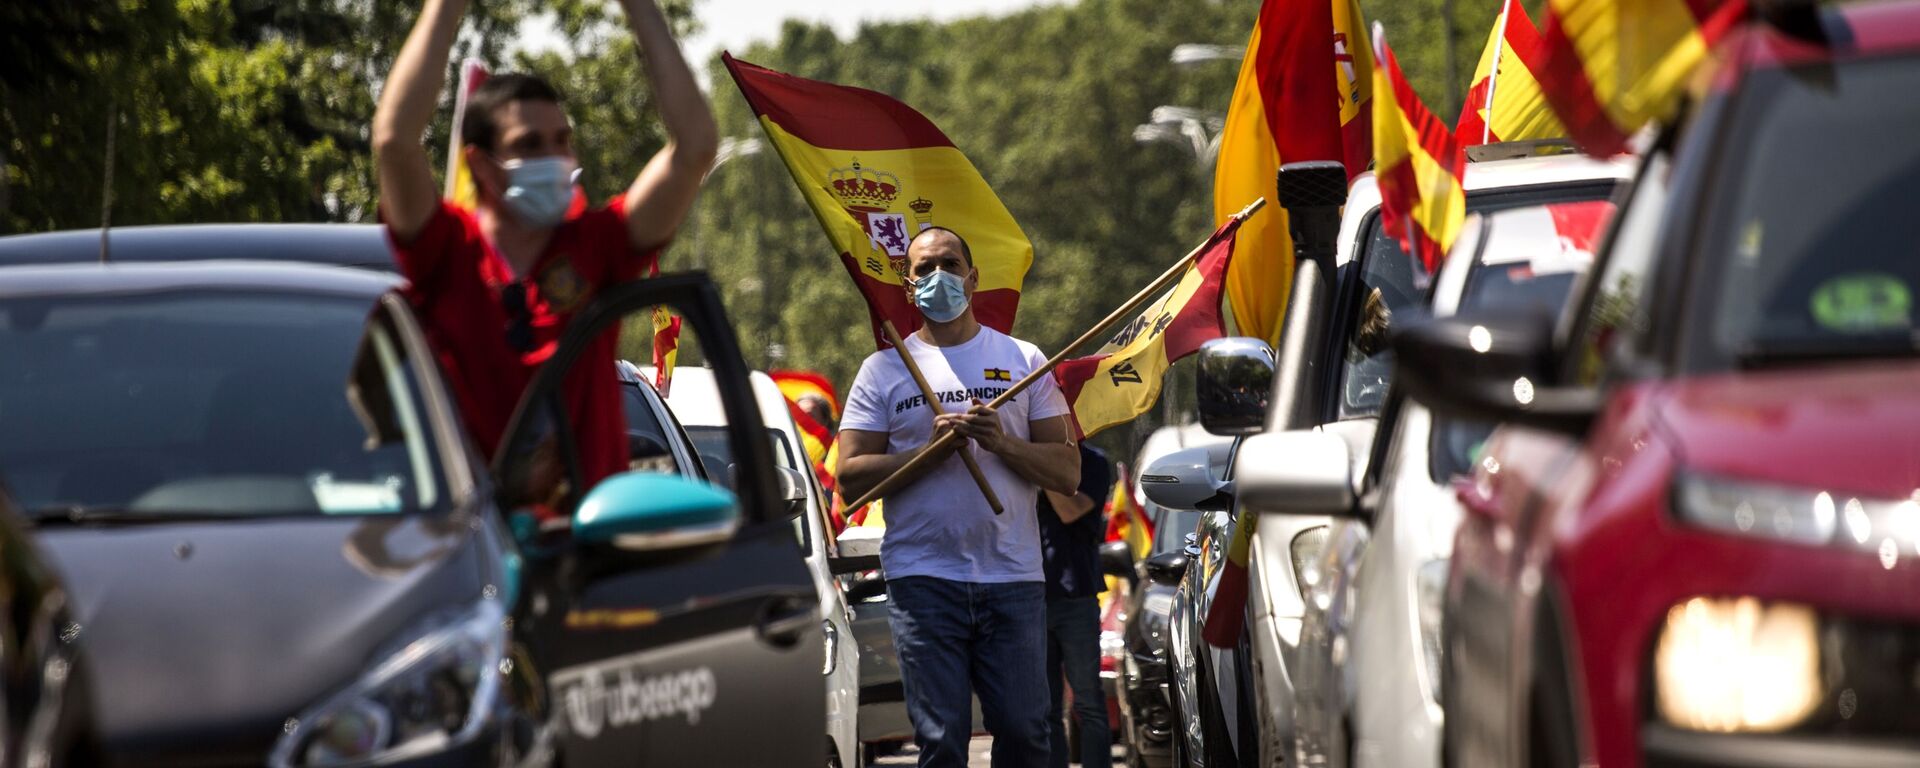 احتجاجات ضد الاجراءات الاحترازية لمكافحة فيروس كورونا في مدريد، إسبانيا 23 مايو/ أيار 2020 - سبوتنيك عربي, 1920, 23.06.2021